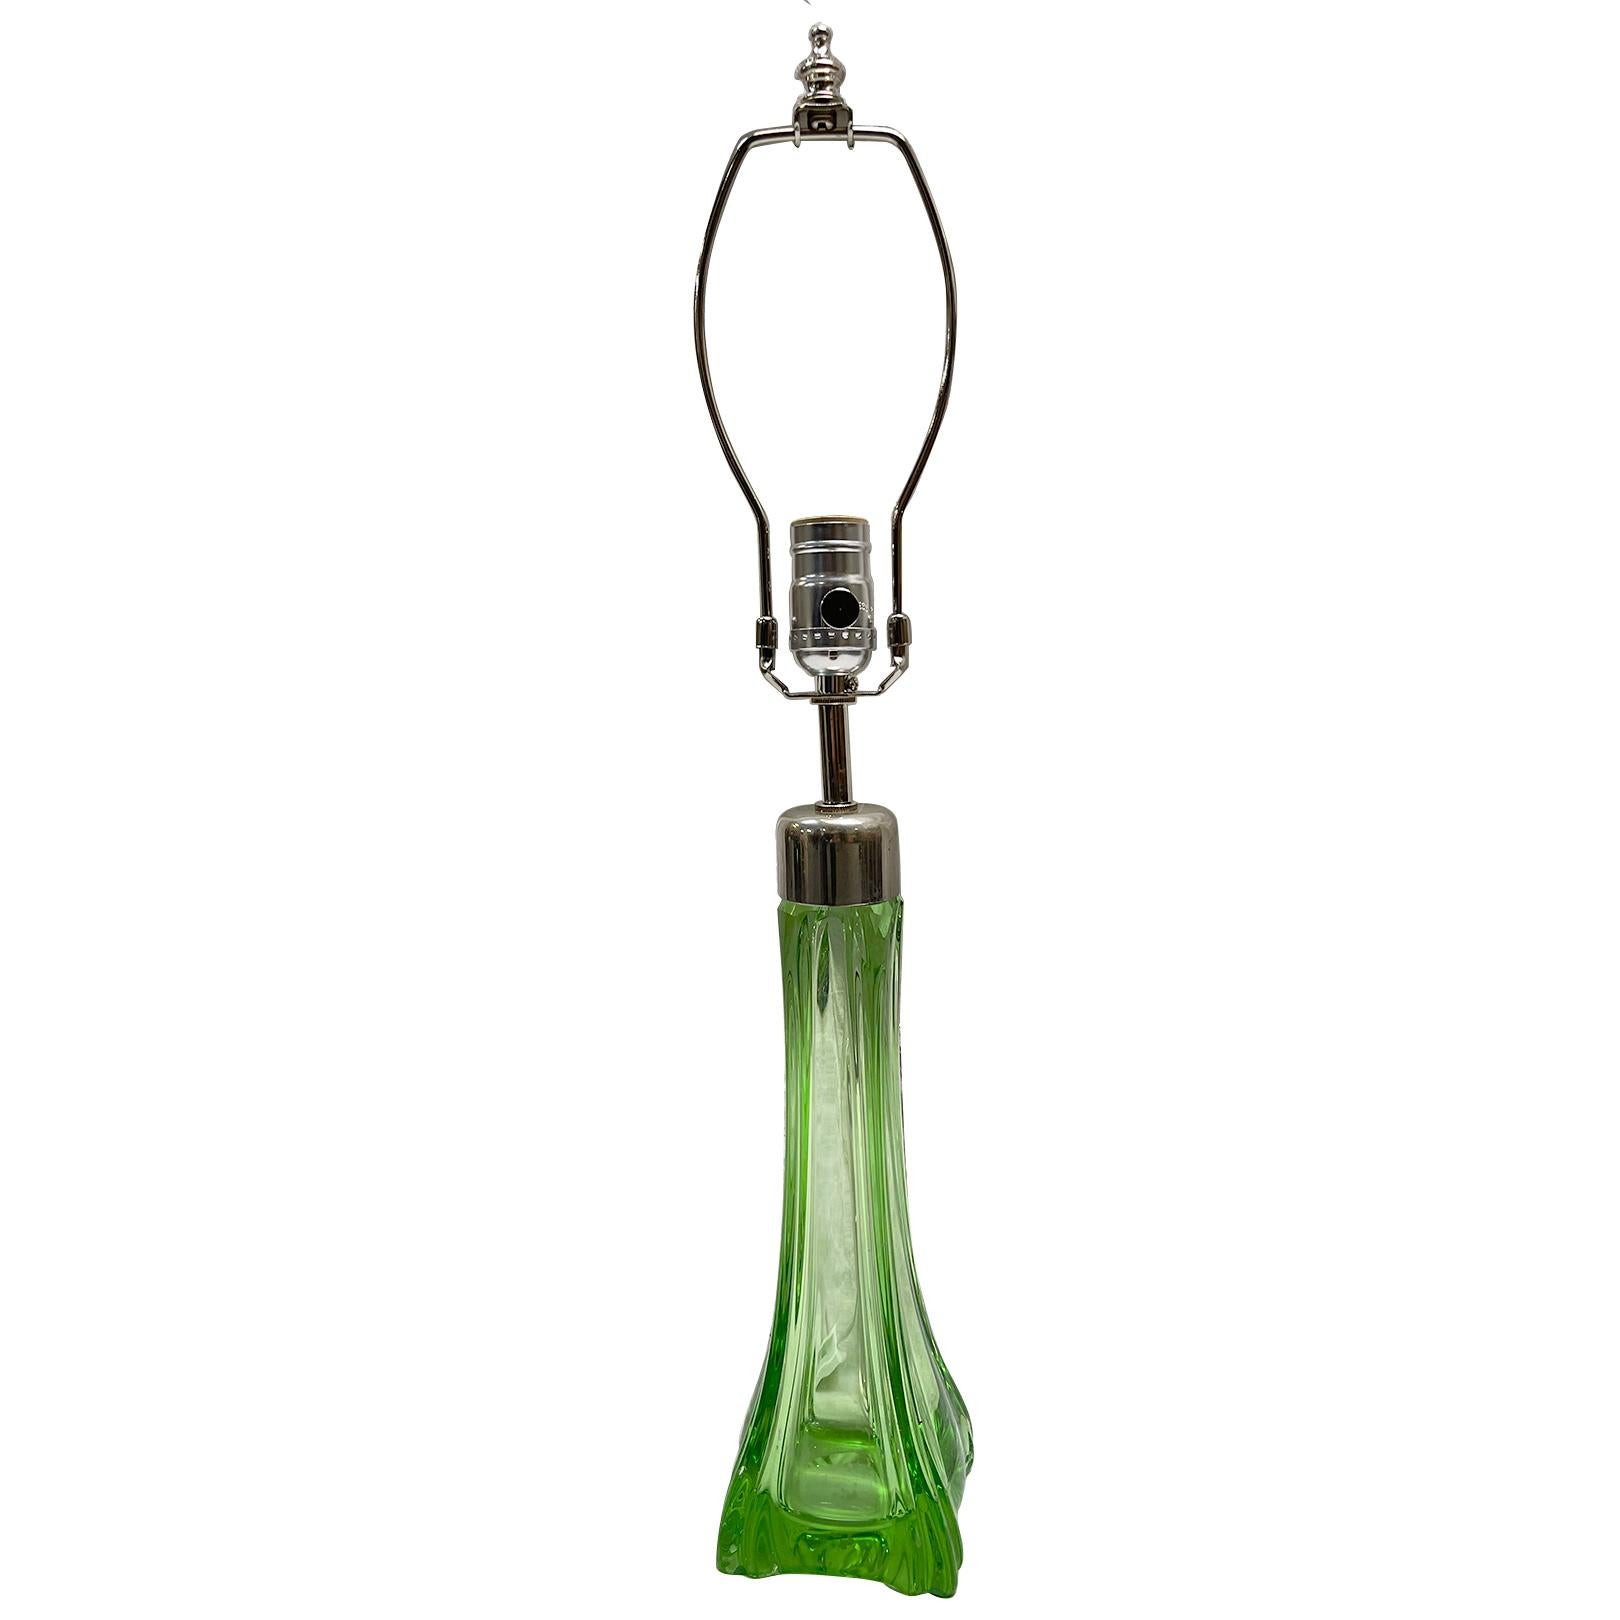 Lampe de table en verre soufflé de Murano datant des années 1960.

Mesures :
Hauteur du corps : 13 pouces
Hauteur jusqu'au support de l'abat-jour : 23